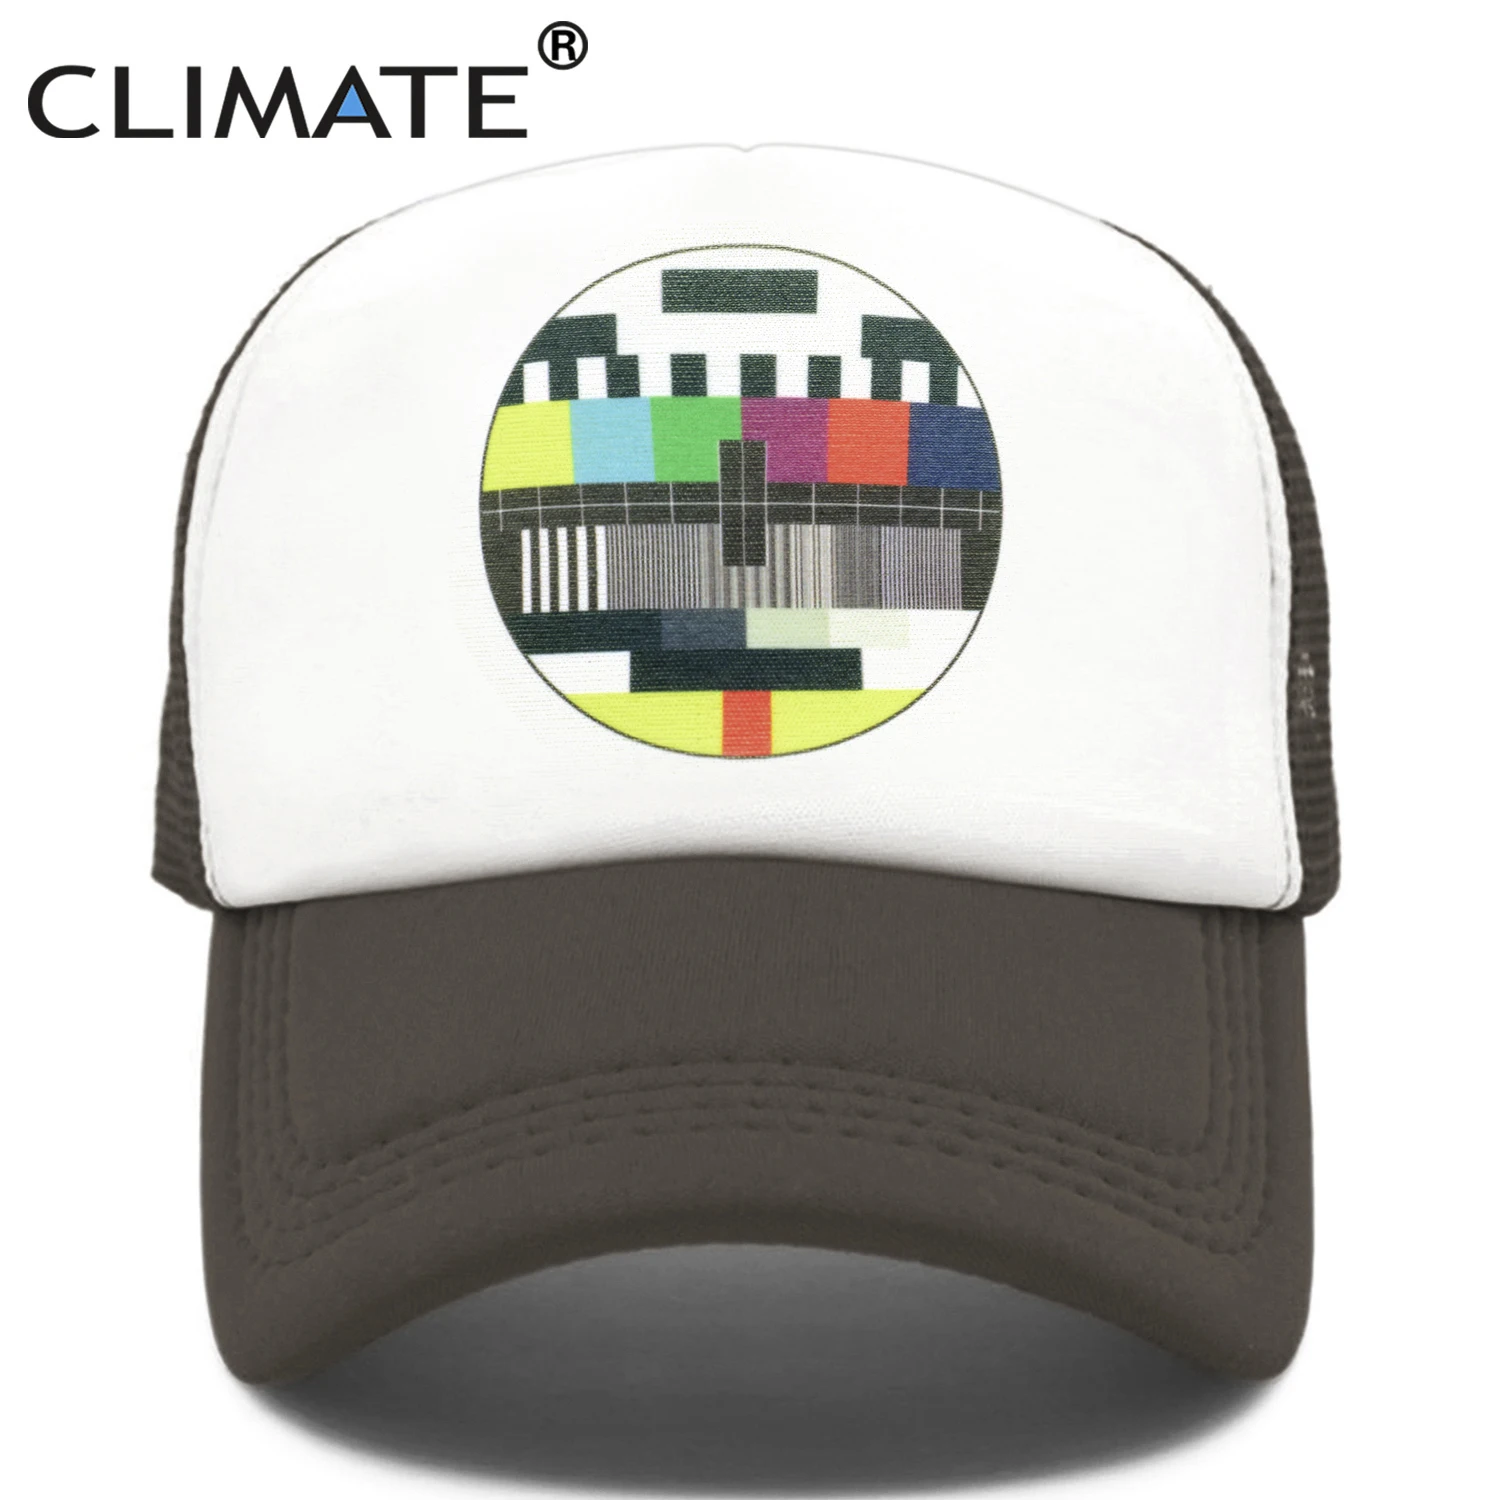 CLIMATE Funny Trucker Cap Hat Men TV No Signal Signalisation Caps Summer Cool Trucker Caps Funny Mesh Net Cool Caps Hat